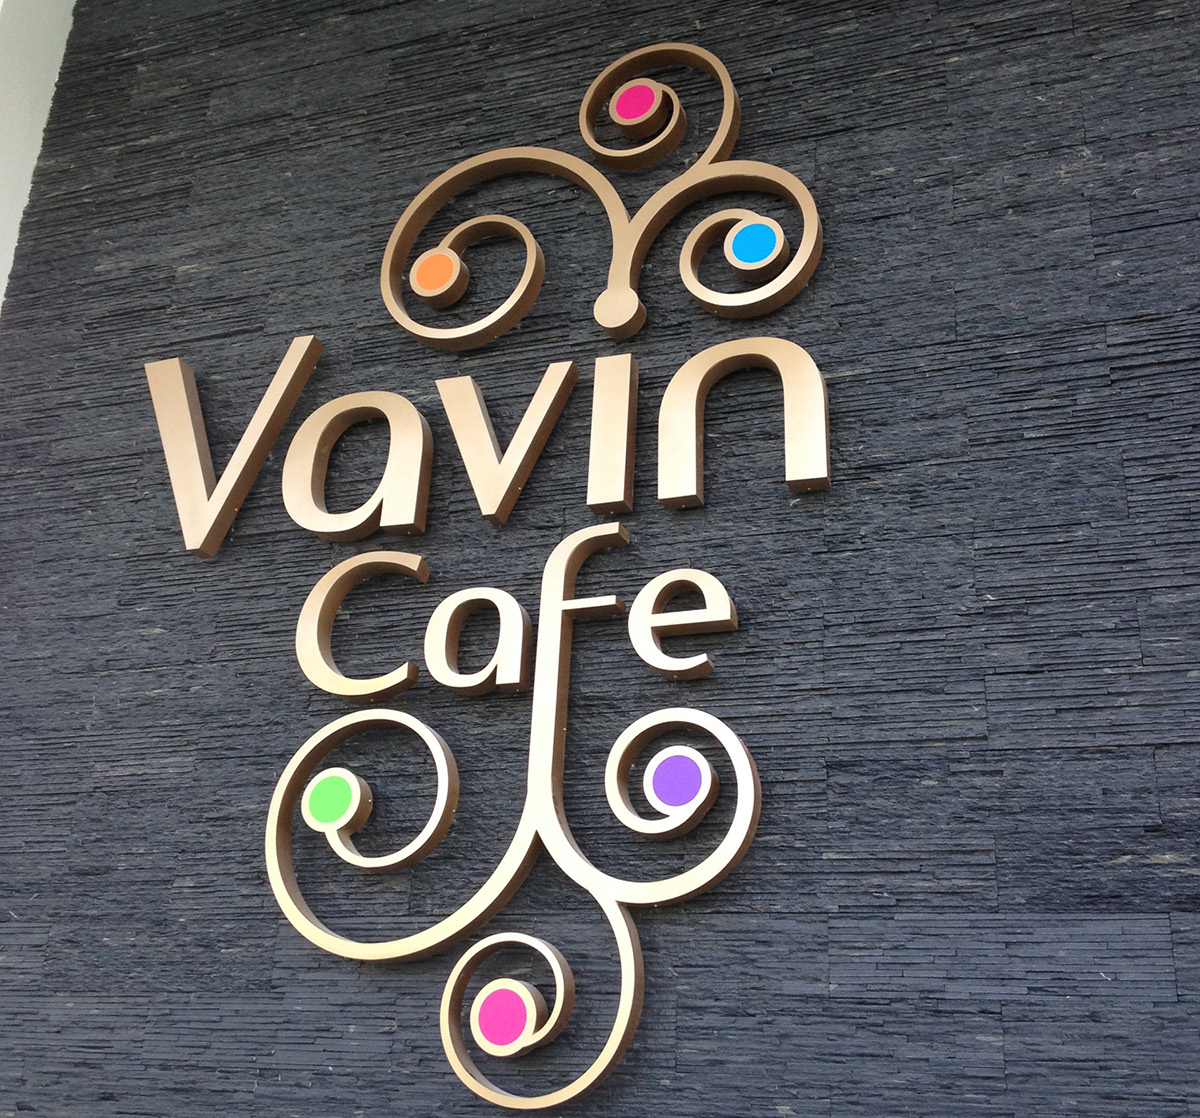 cafe identity French curles vavin logo elegant